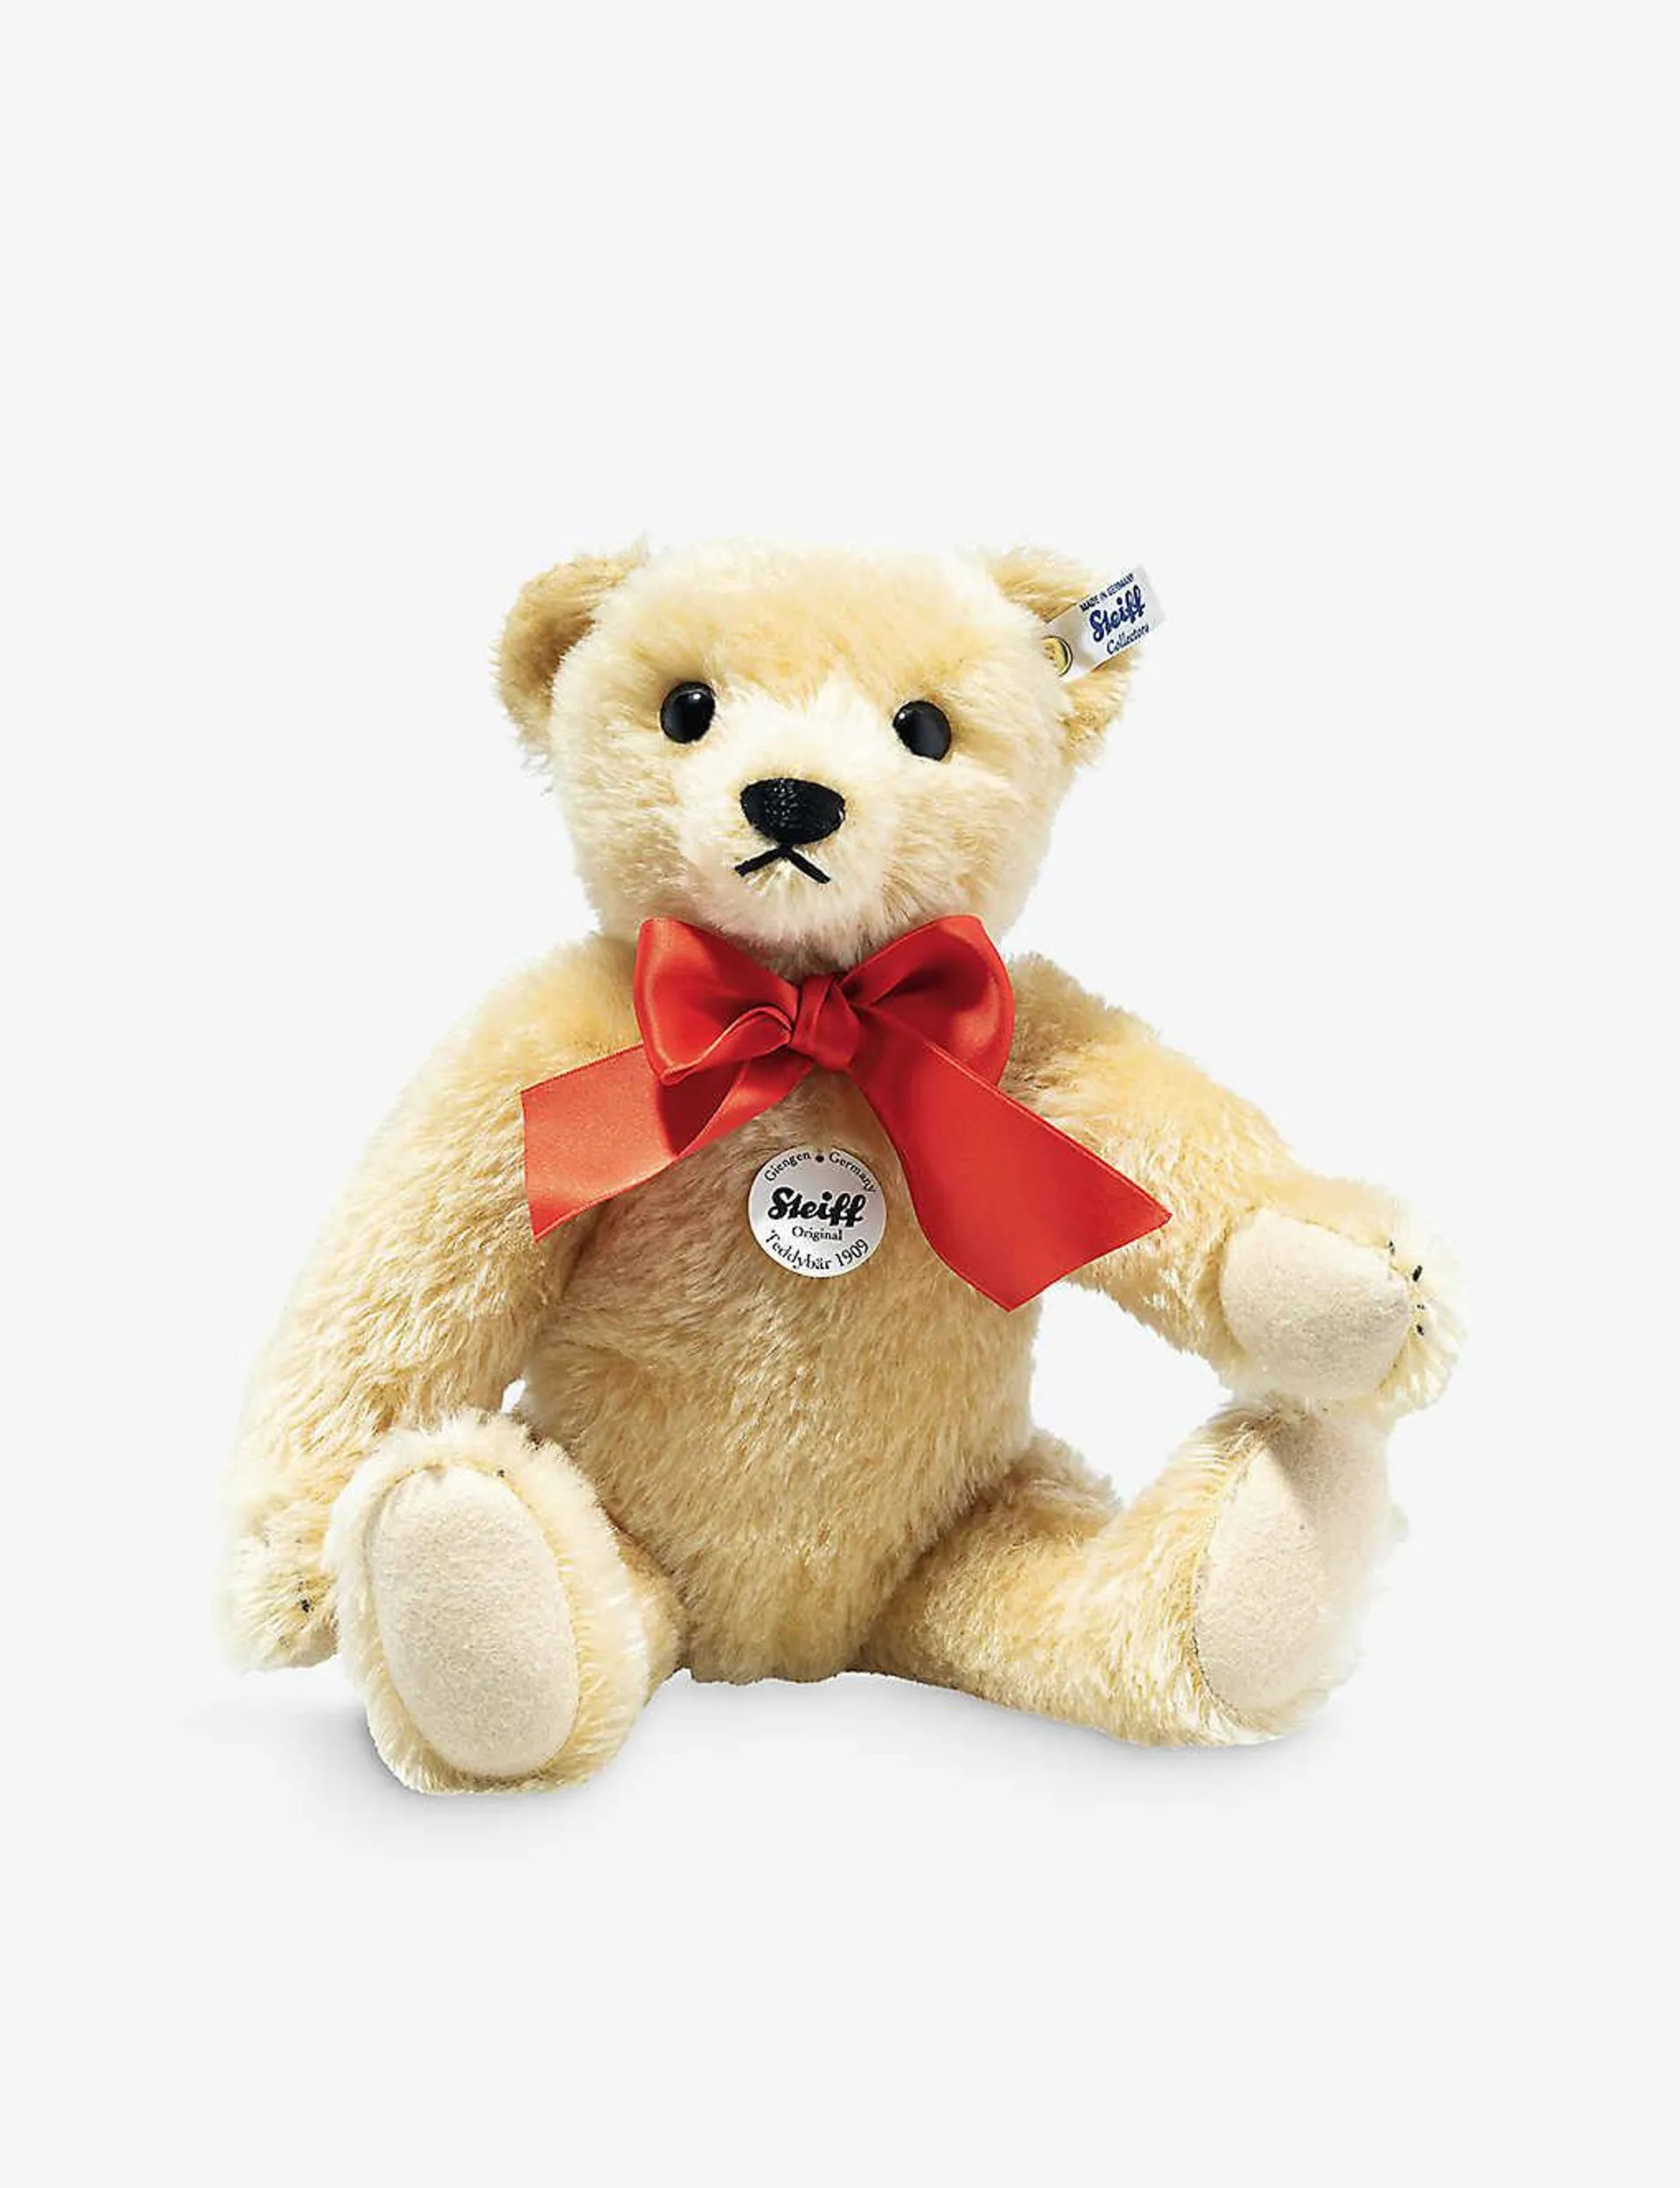 Classic 1909 teddy bear soft toy 35cm